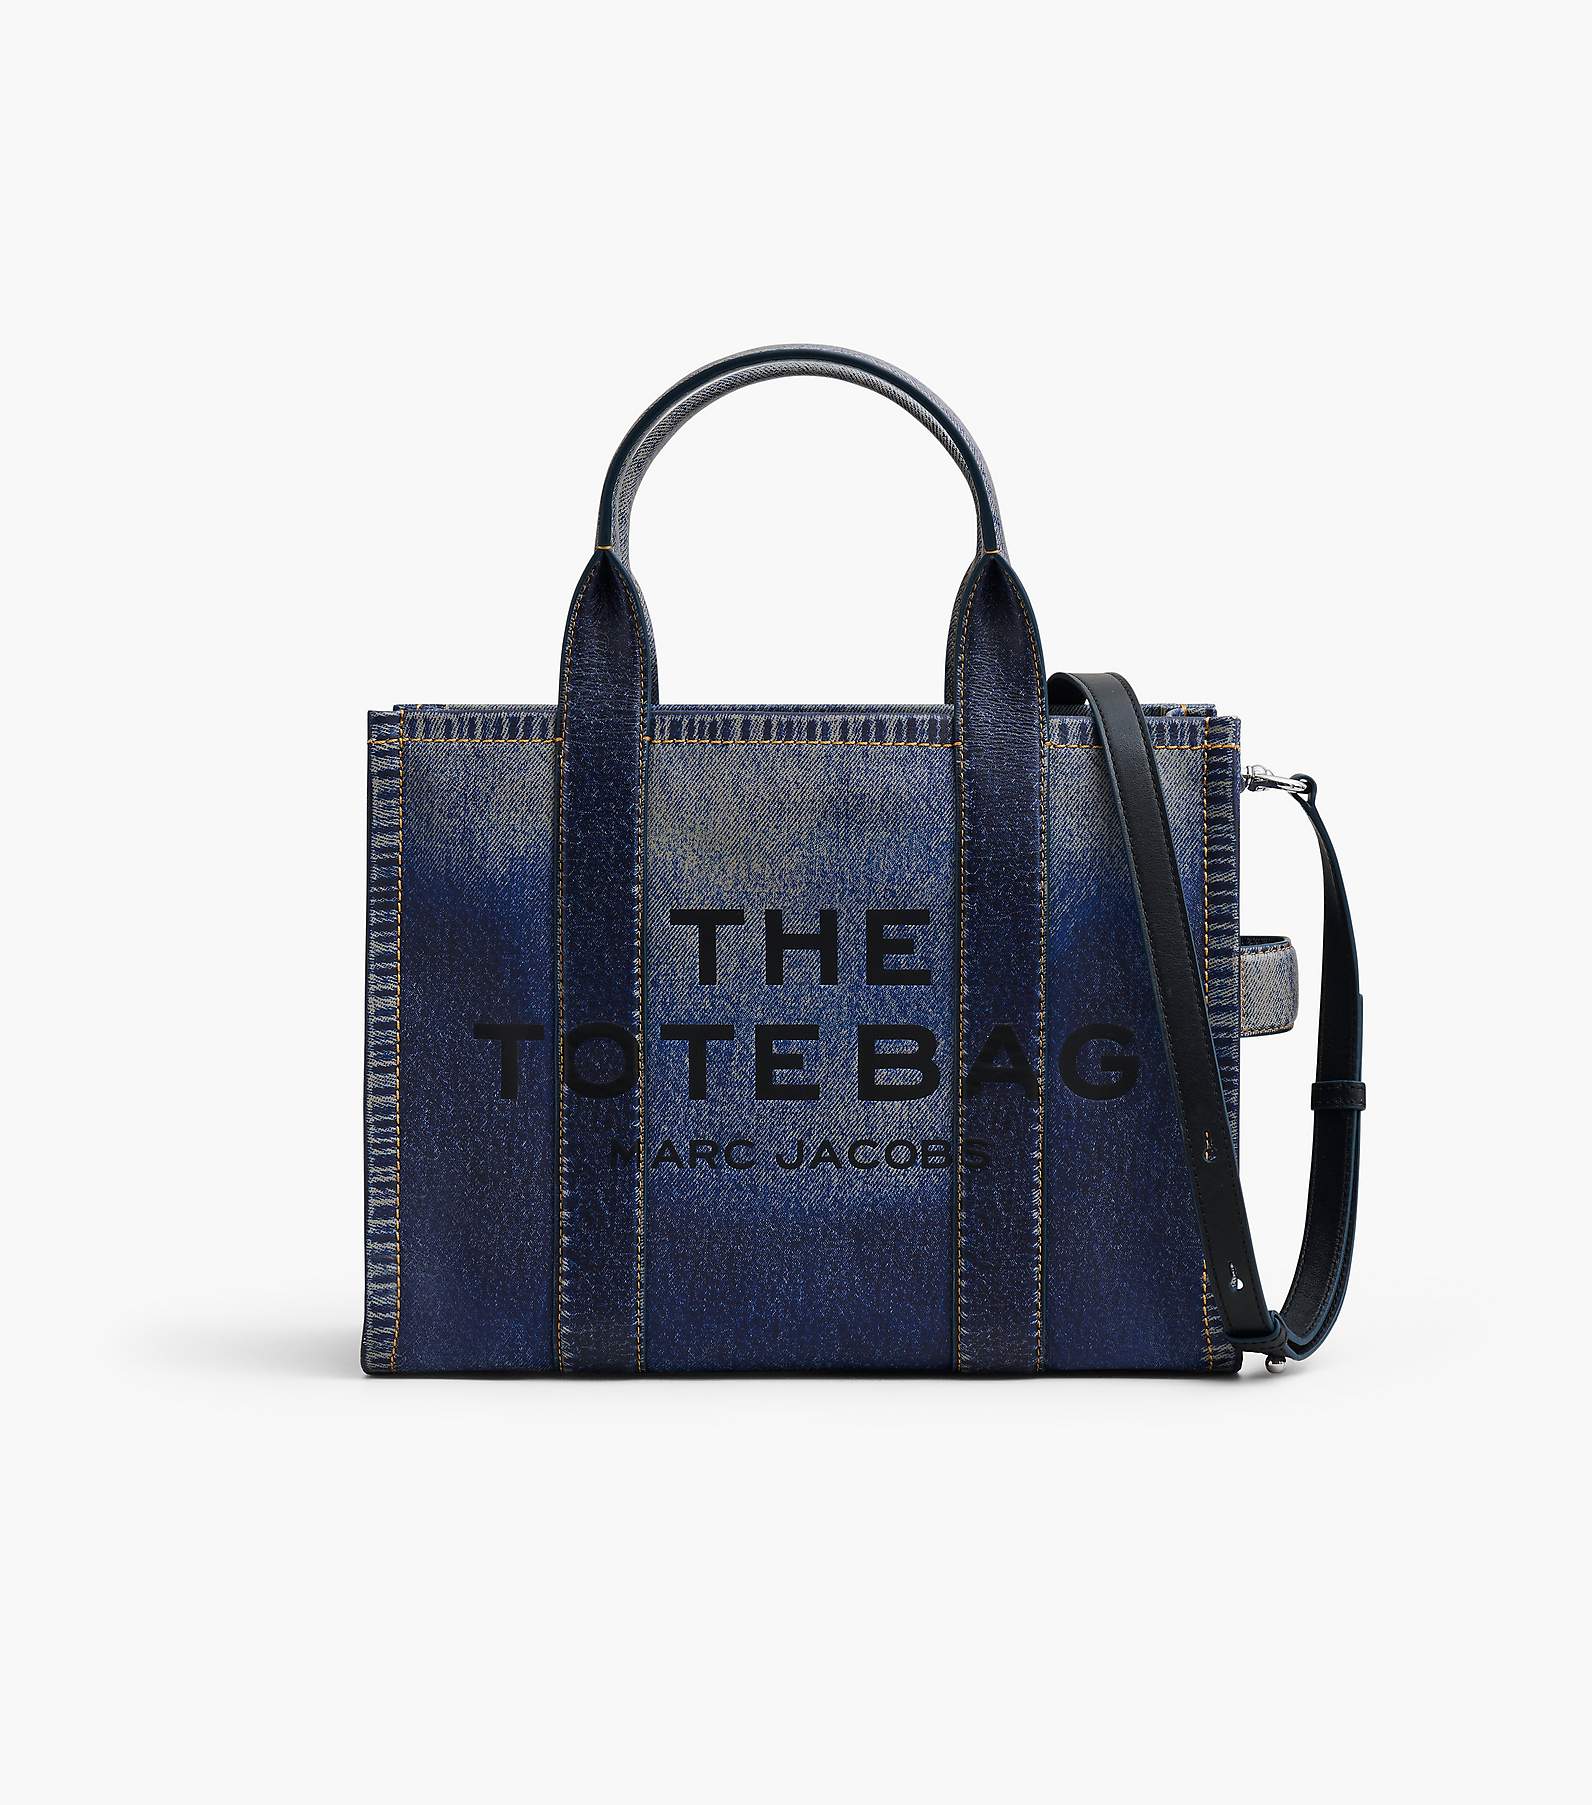 The Denim-Printed Leather Medium Tote Bag